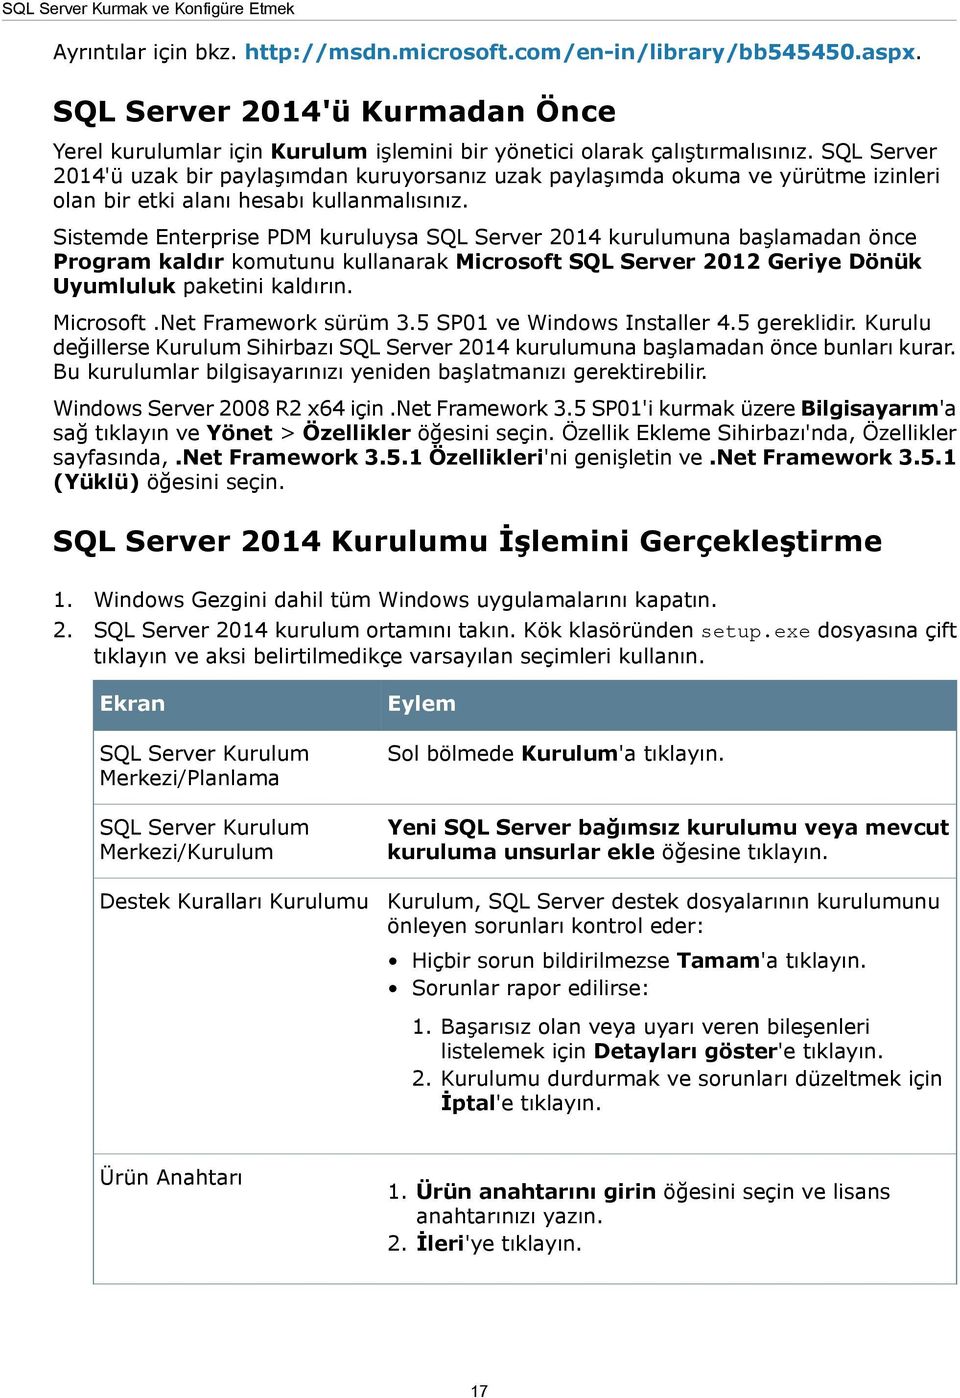 SQL Server 2014'ü uzak bir paylaşımdan kuruyorsanız uzak paylaşımda okuma ve yürütme izinleri olan bir etki alanı hesabı kullanmalısınız.